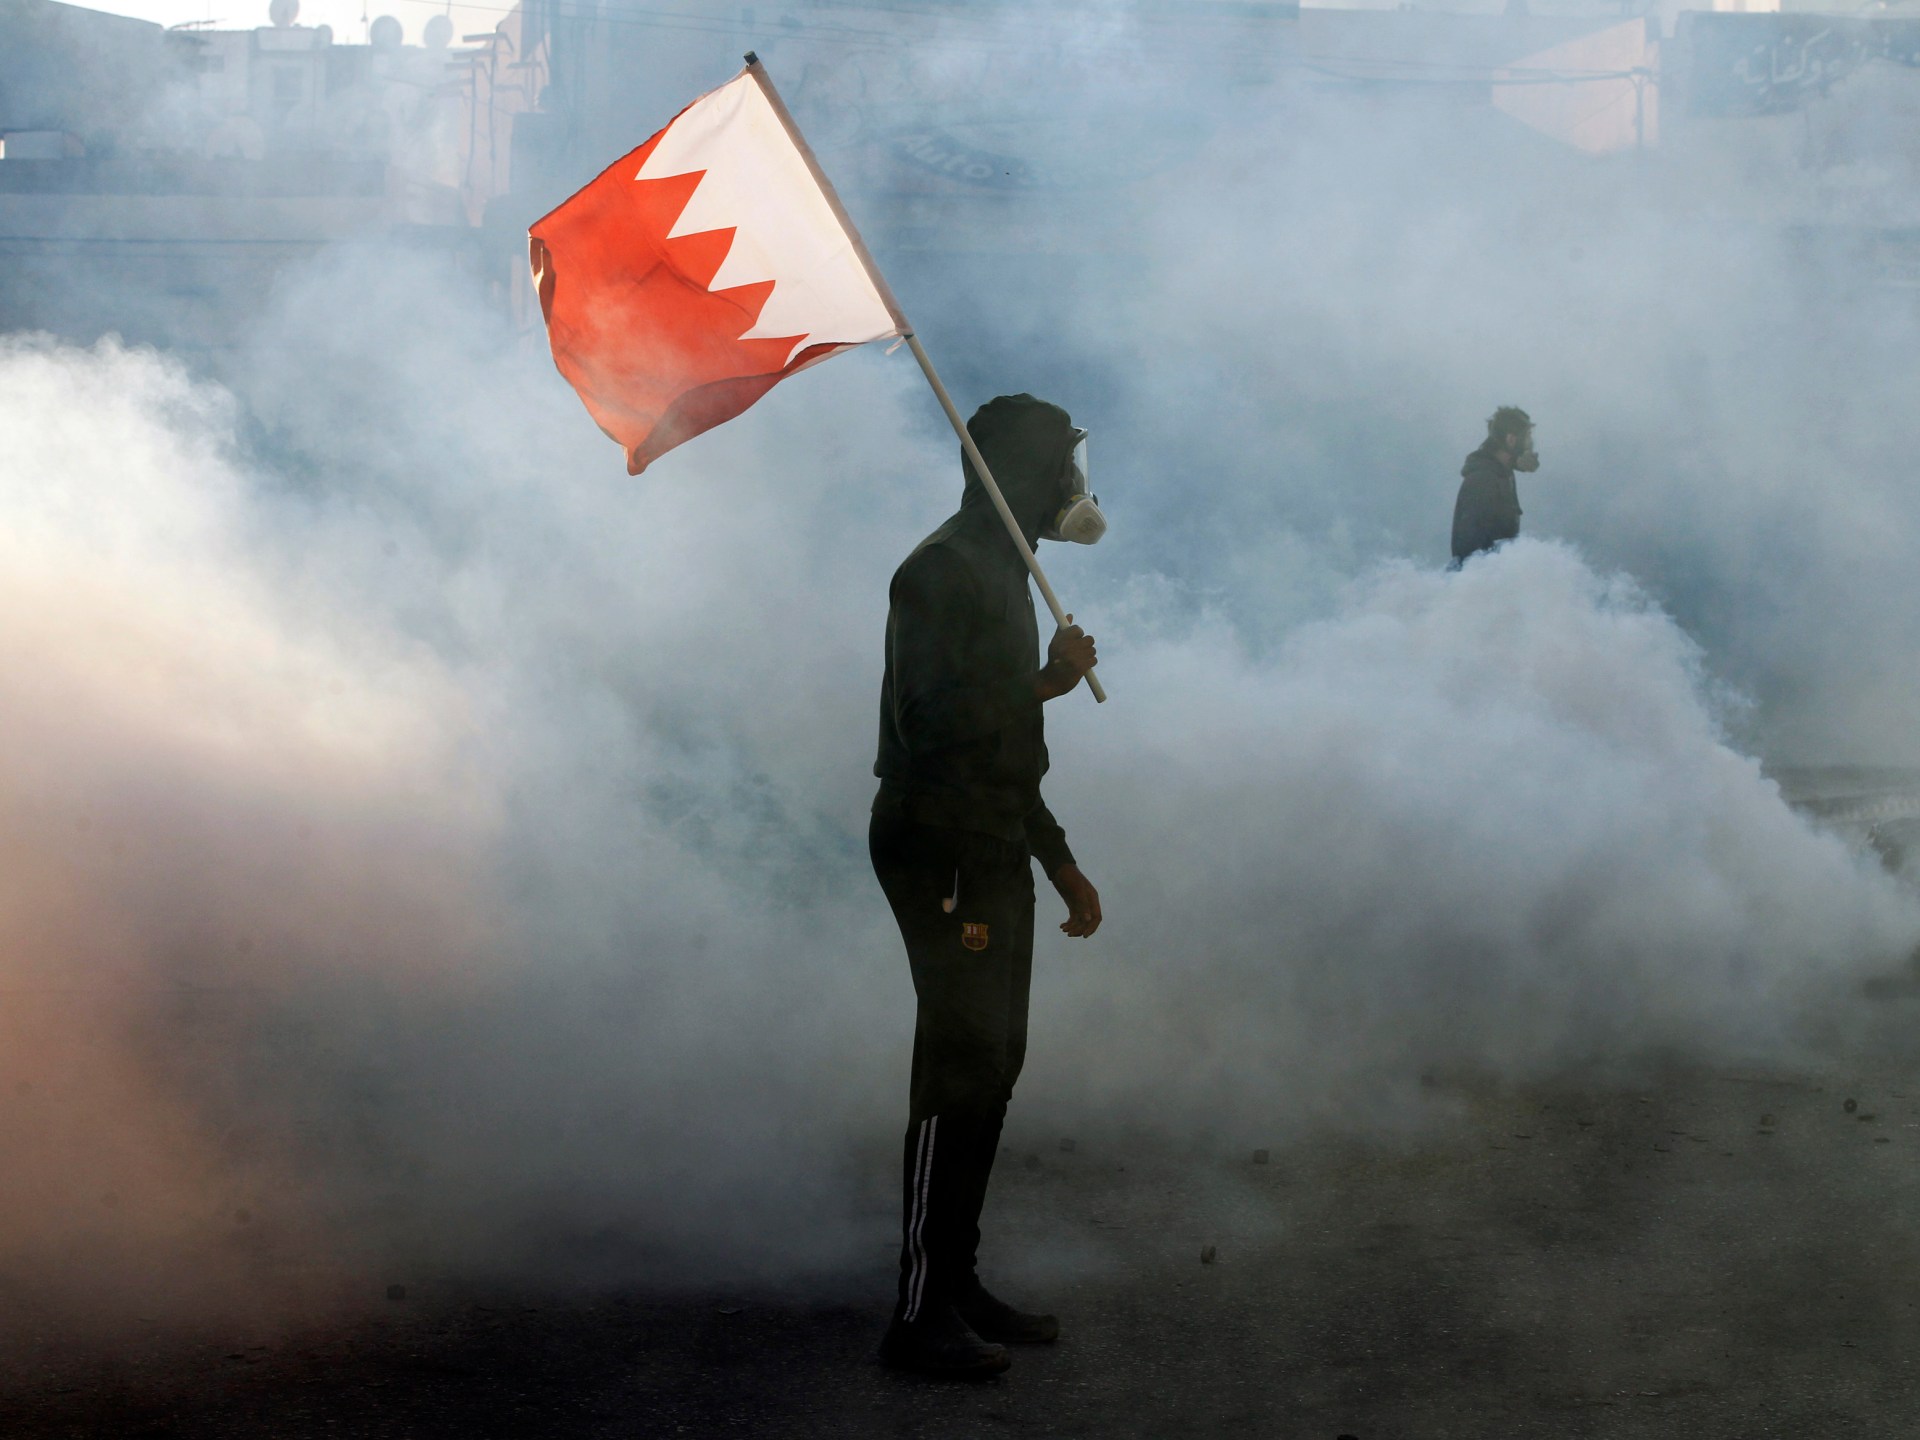 Kelompok Hak Asasi Manusia, Pakar PBB Mengekspresikan Kekhawatiran Atas Penangkapan di Bahrain |  Berita Hak Asasi Manusia